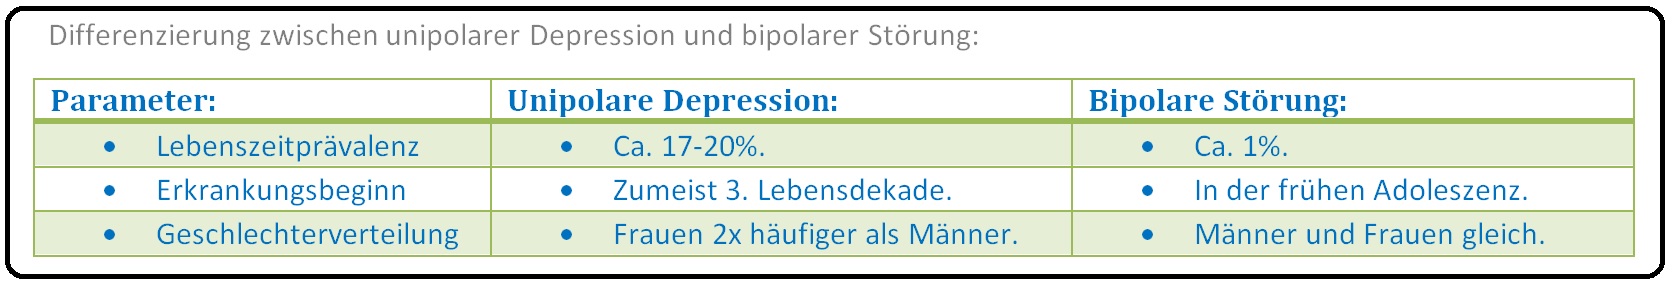 1040 Differenzierung zwischen unipolarer Depression und bipolarer Störung